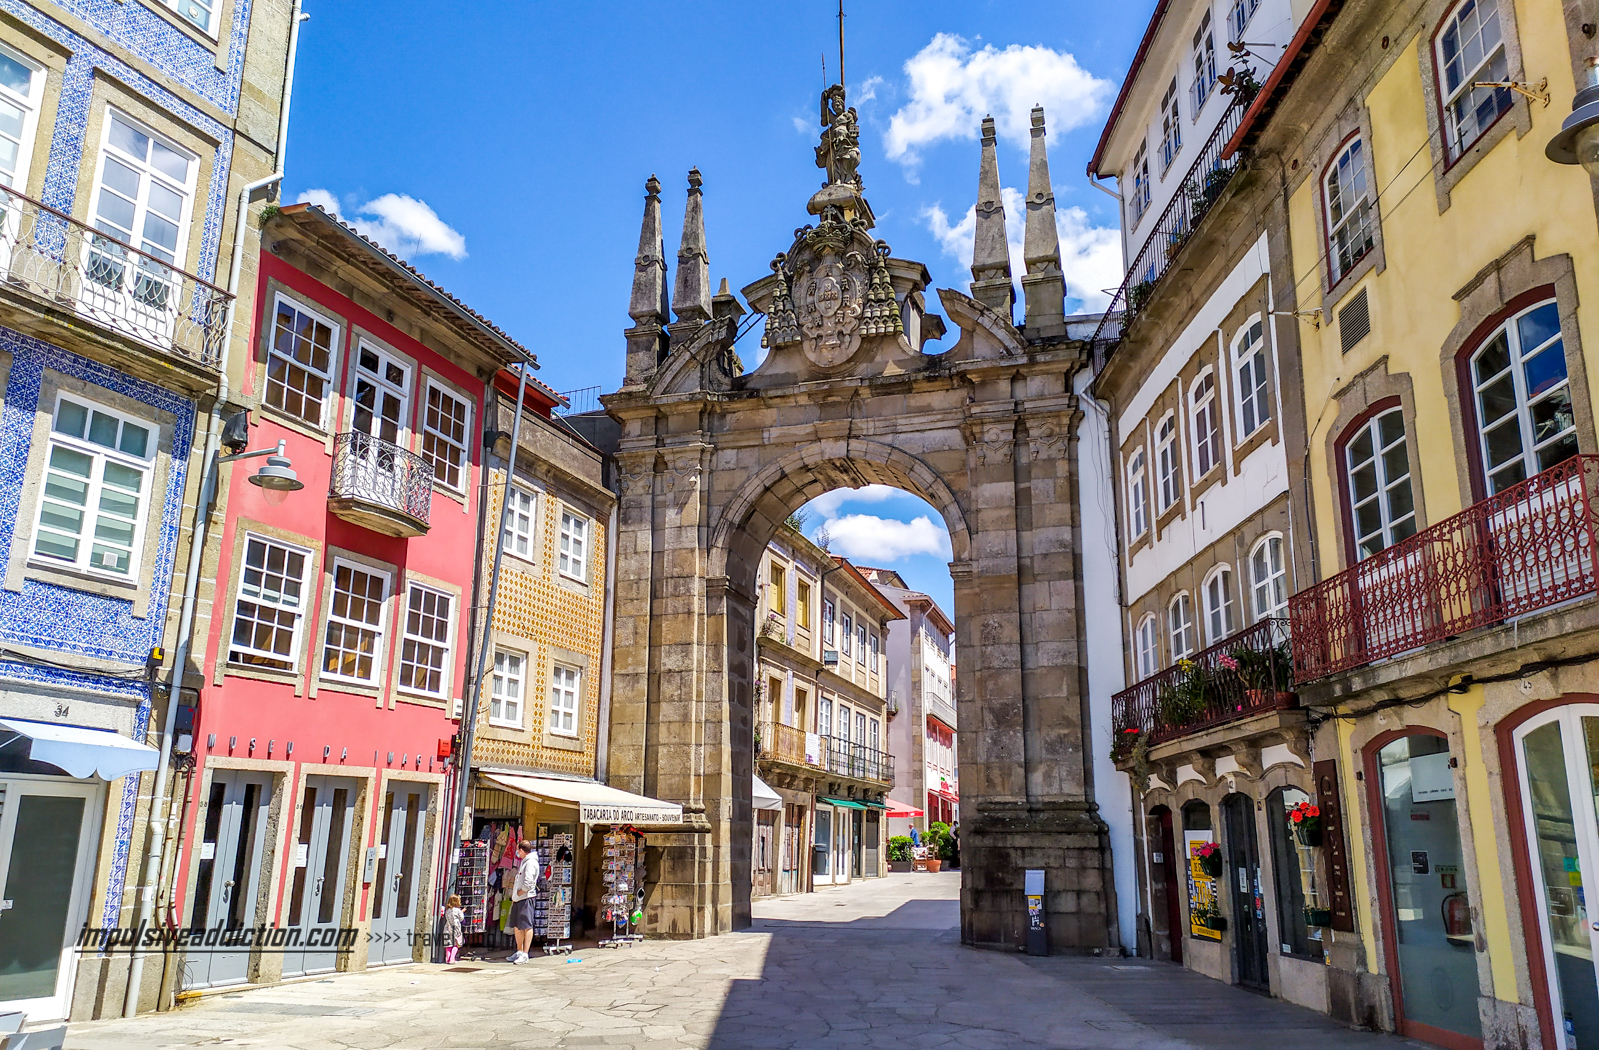 Porta Nova Arch in Braga